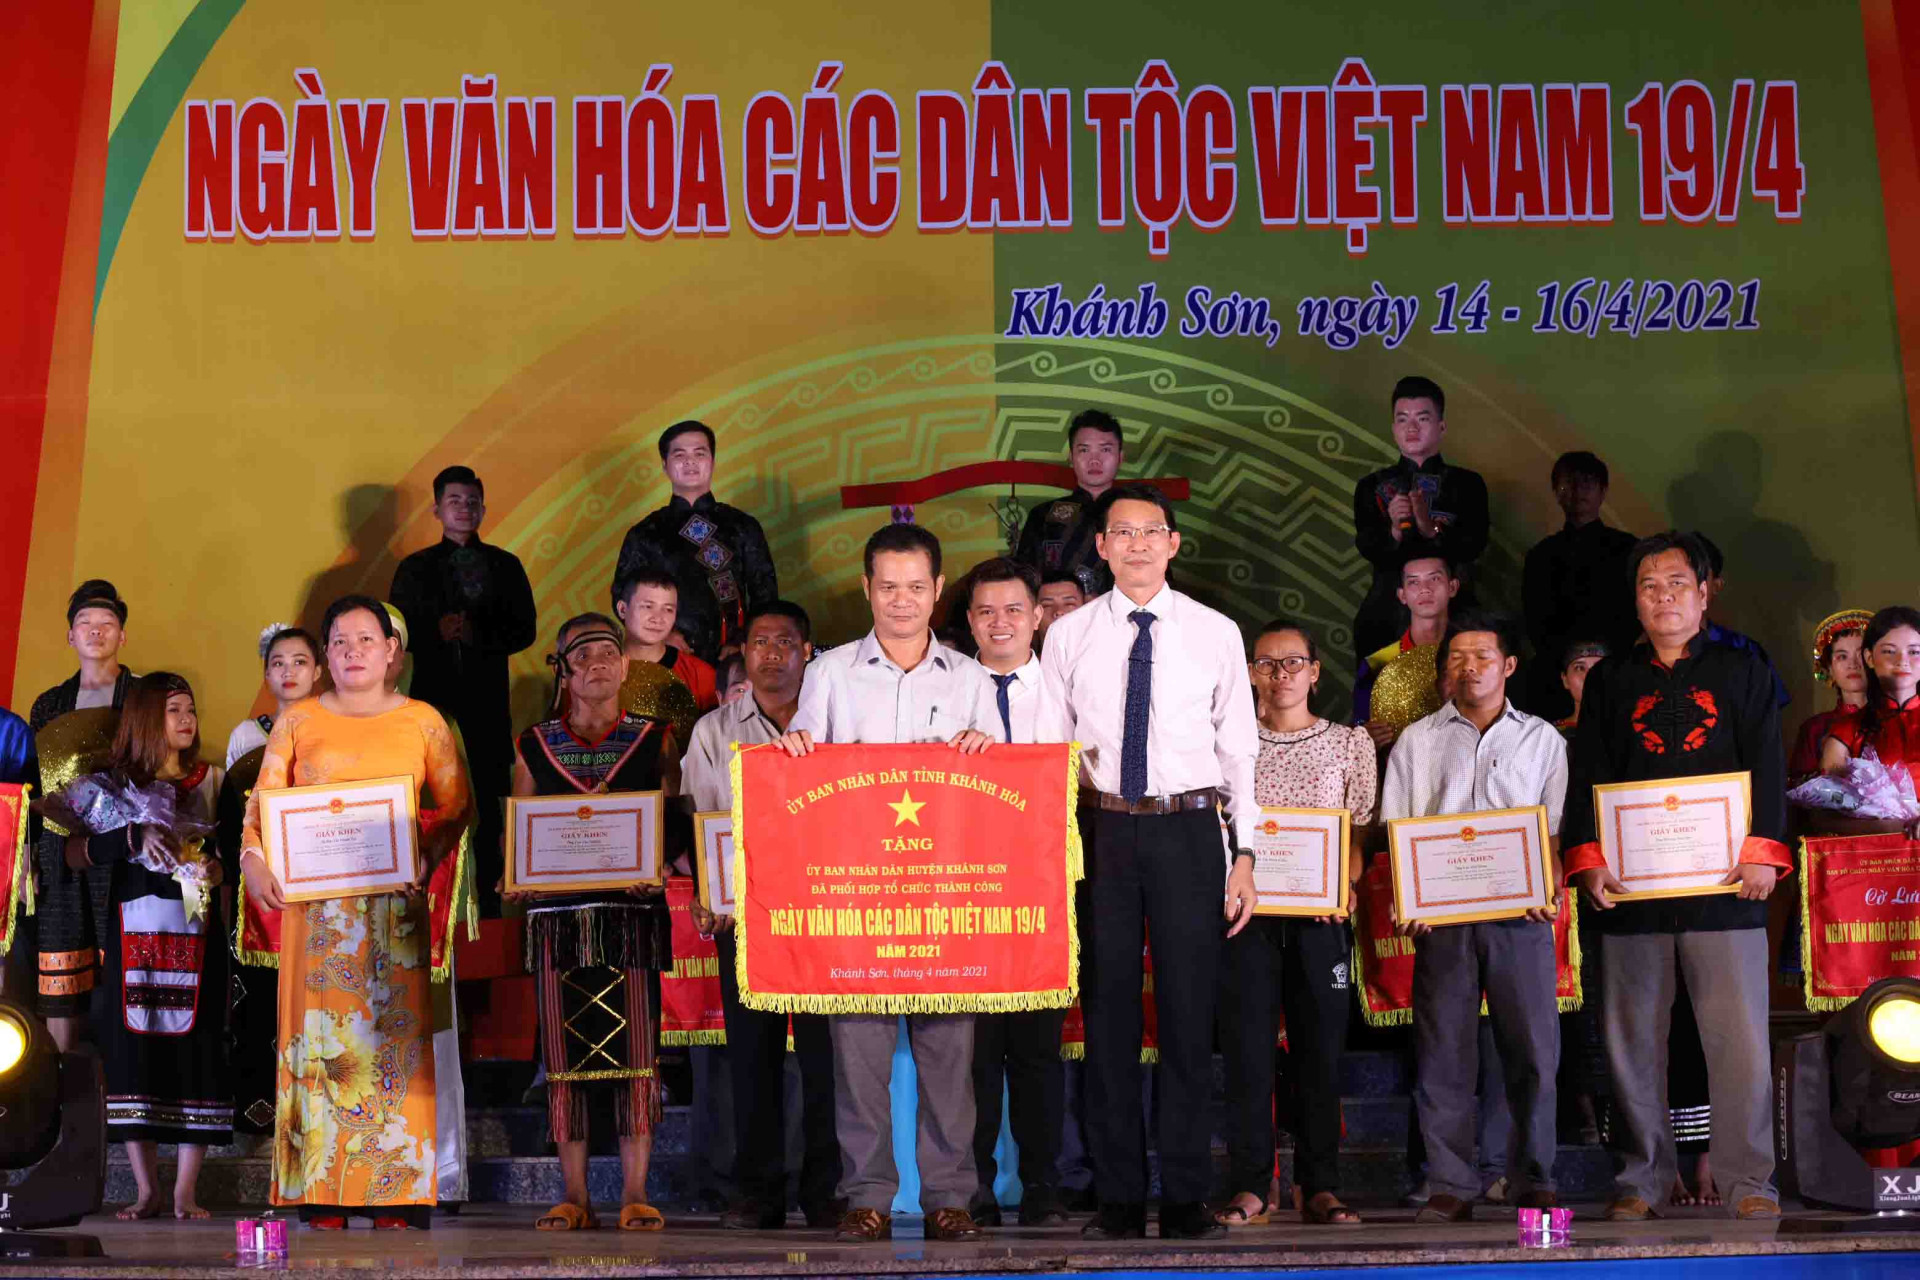 Ông Đinh Văn Thiệu trao cờ cho đại diện lãnh đạo huyện Khánh Sơn - địa phương đăng cai tổ chức Ngày văn hóa các dân tộc Việt Nam tỉnh Khánh Hòa năm 2021. 